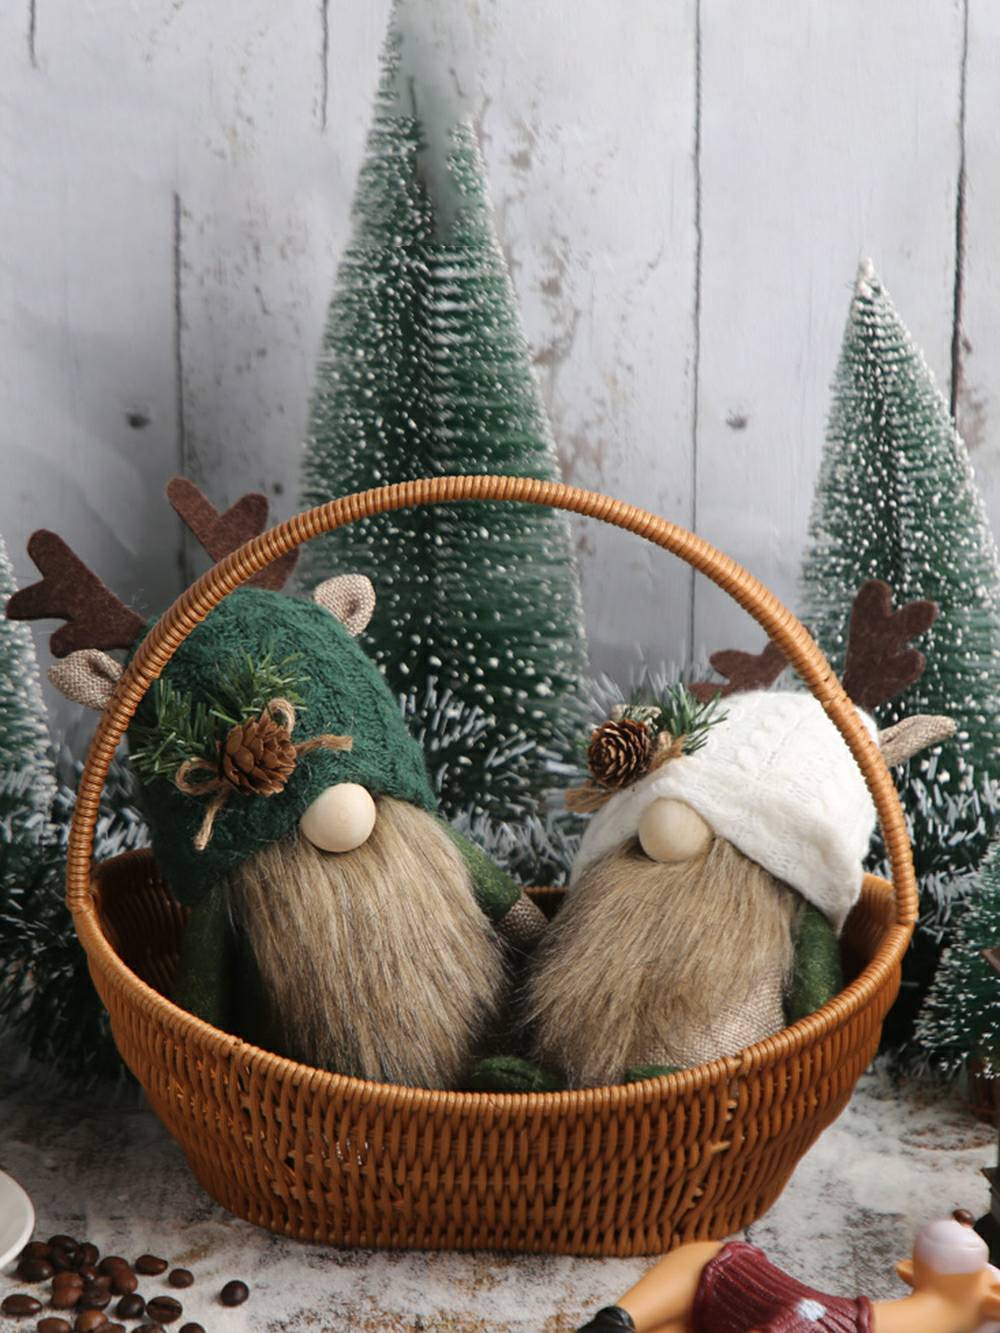 Adorable décoration de Noël en forme de gnome de forêt en bois et pomme de pin.